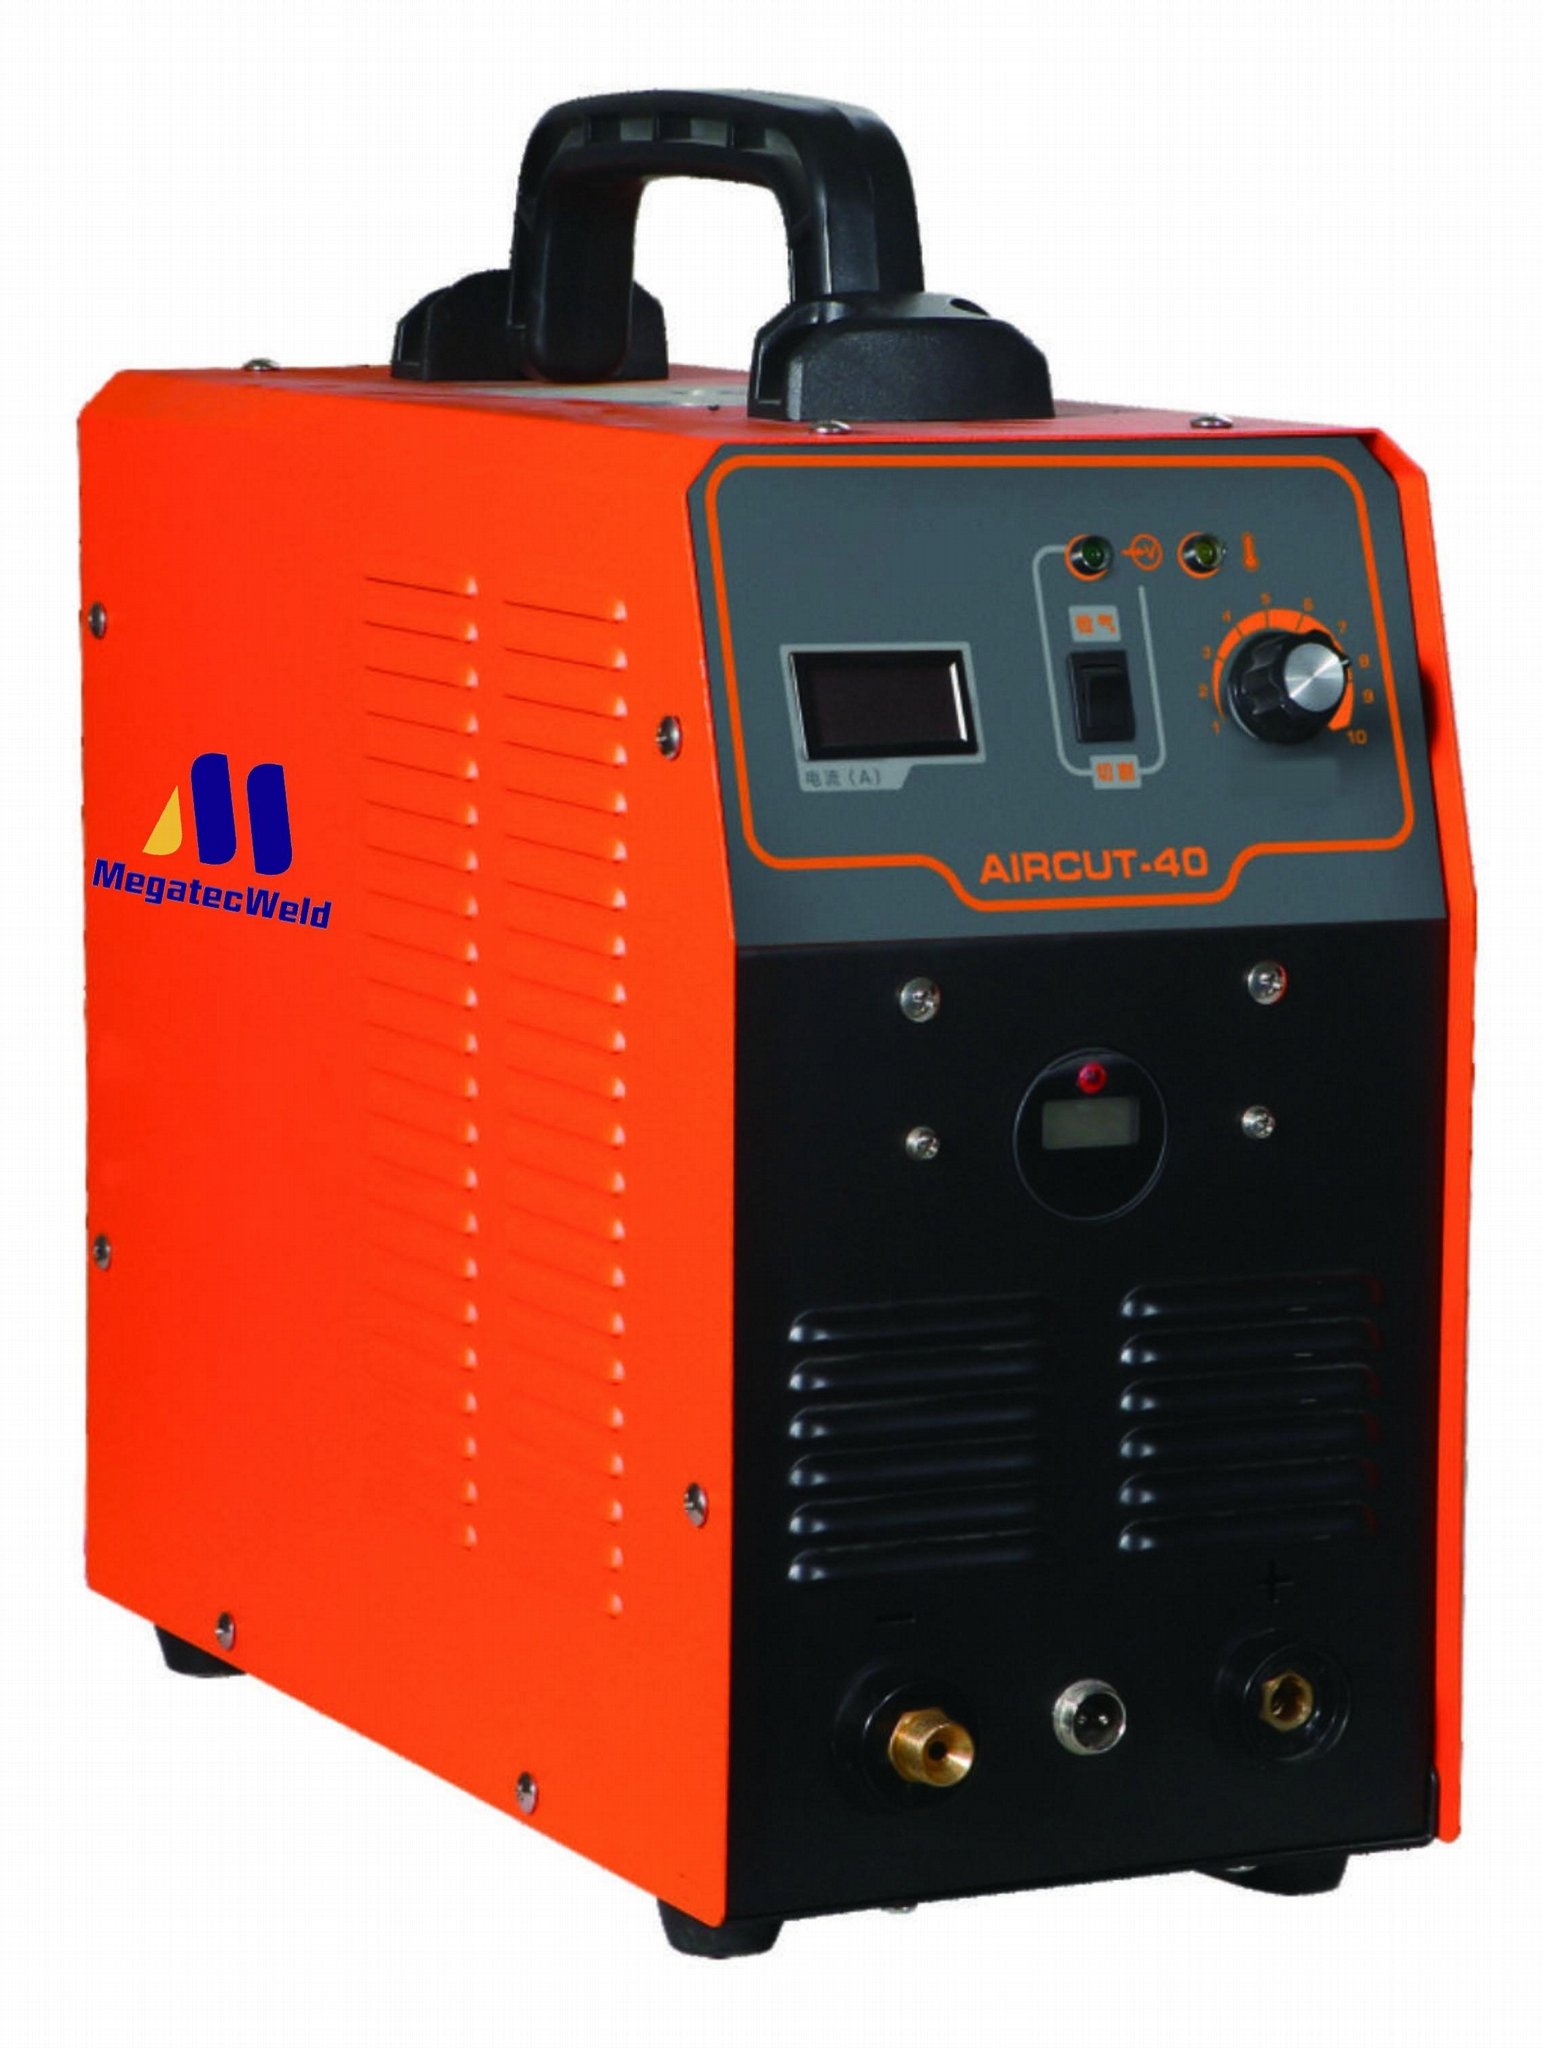 CUT40 Air Plasma Cutting Machine Air Compressor Built-in Plasma Cutter  1